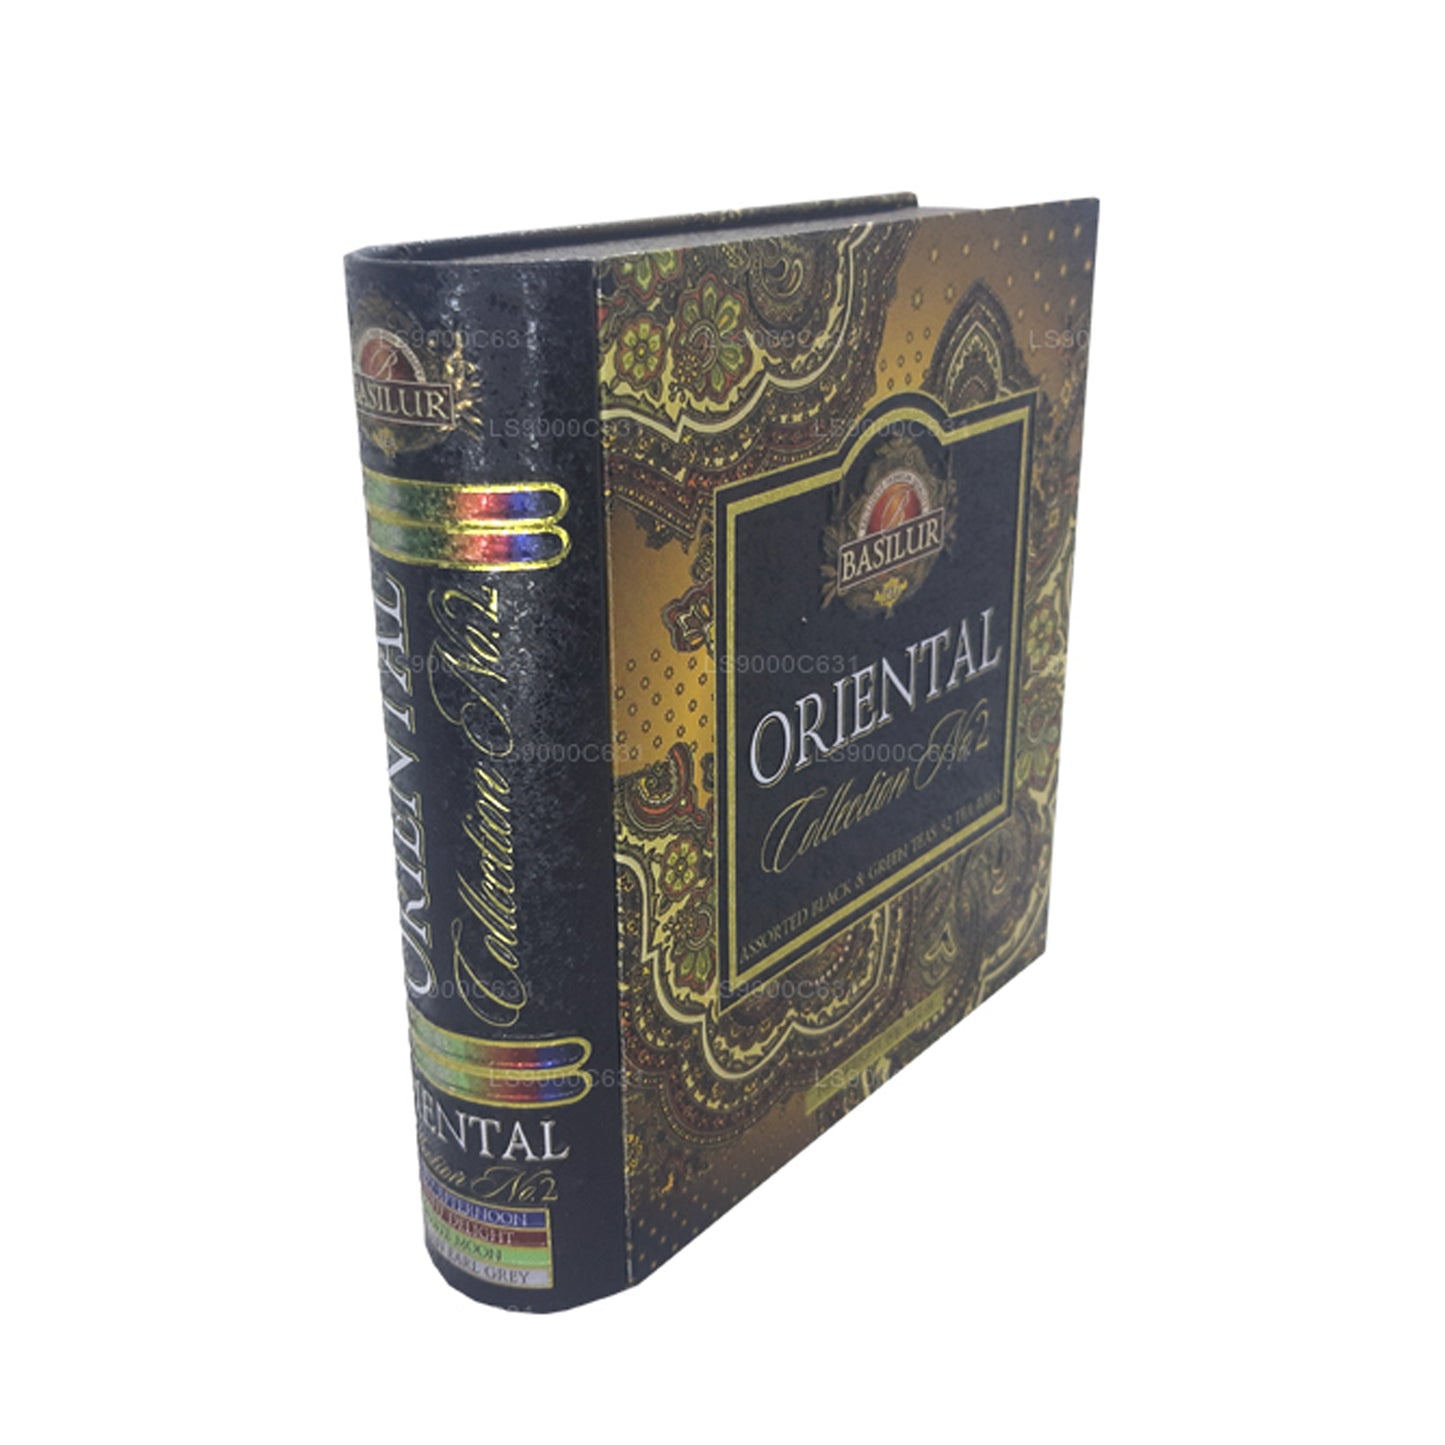 Libro de té Basilur Oriental Collection, volumen 2 (60 g), 32 bolsitas de té